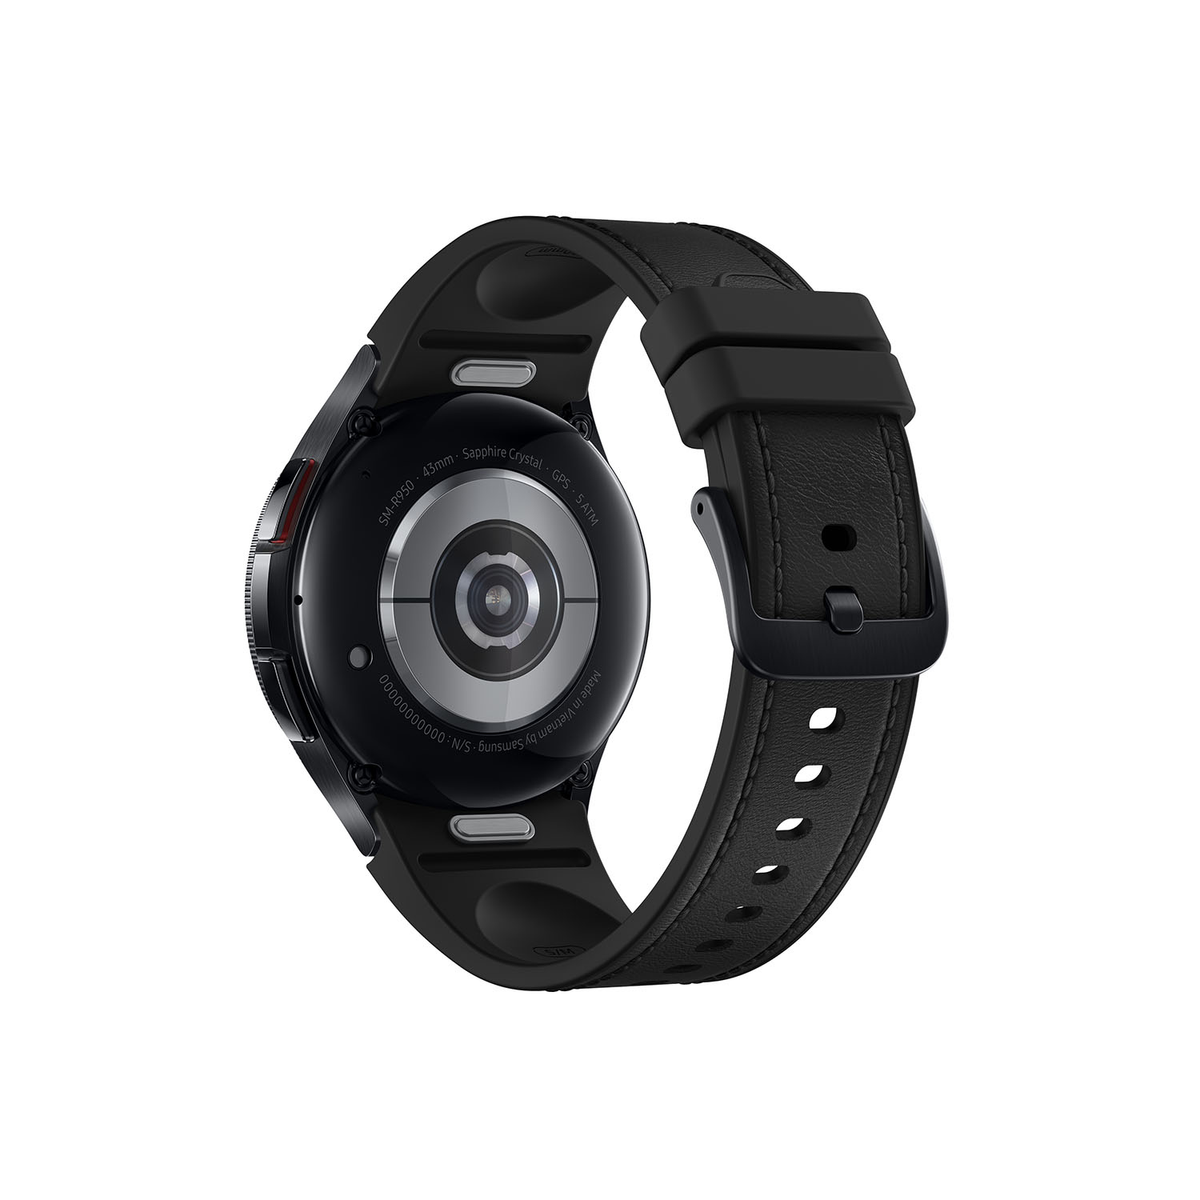 Galaxy Smartwatch SAMSUNG Rostfreier Watch6 Schwarz Stahl,